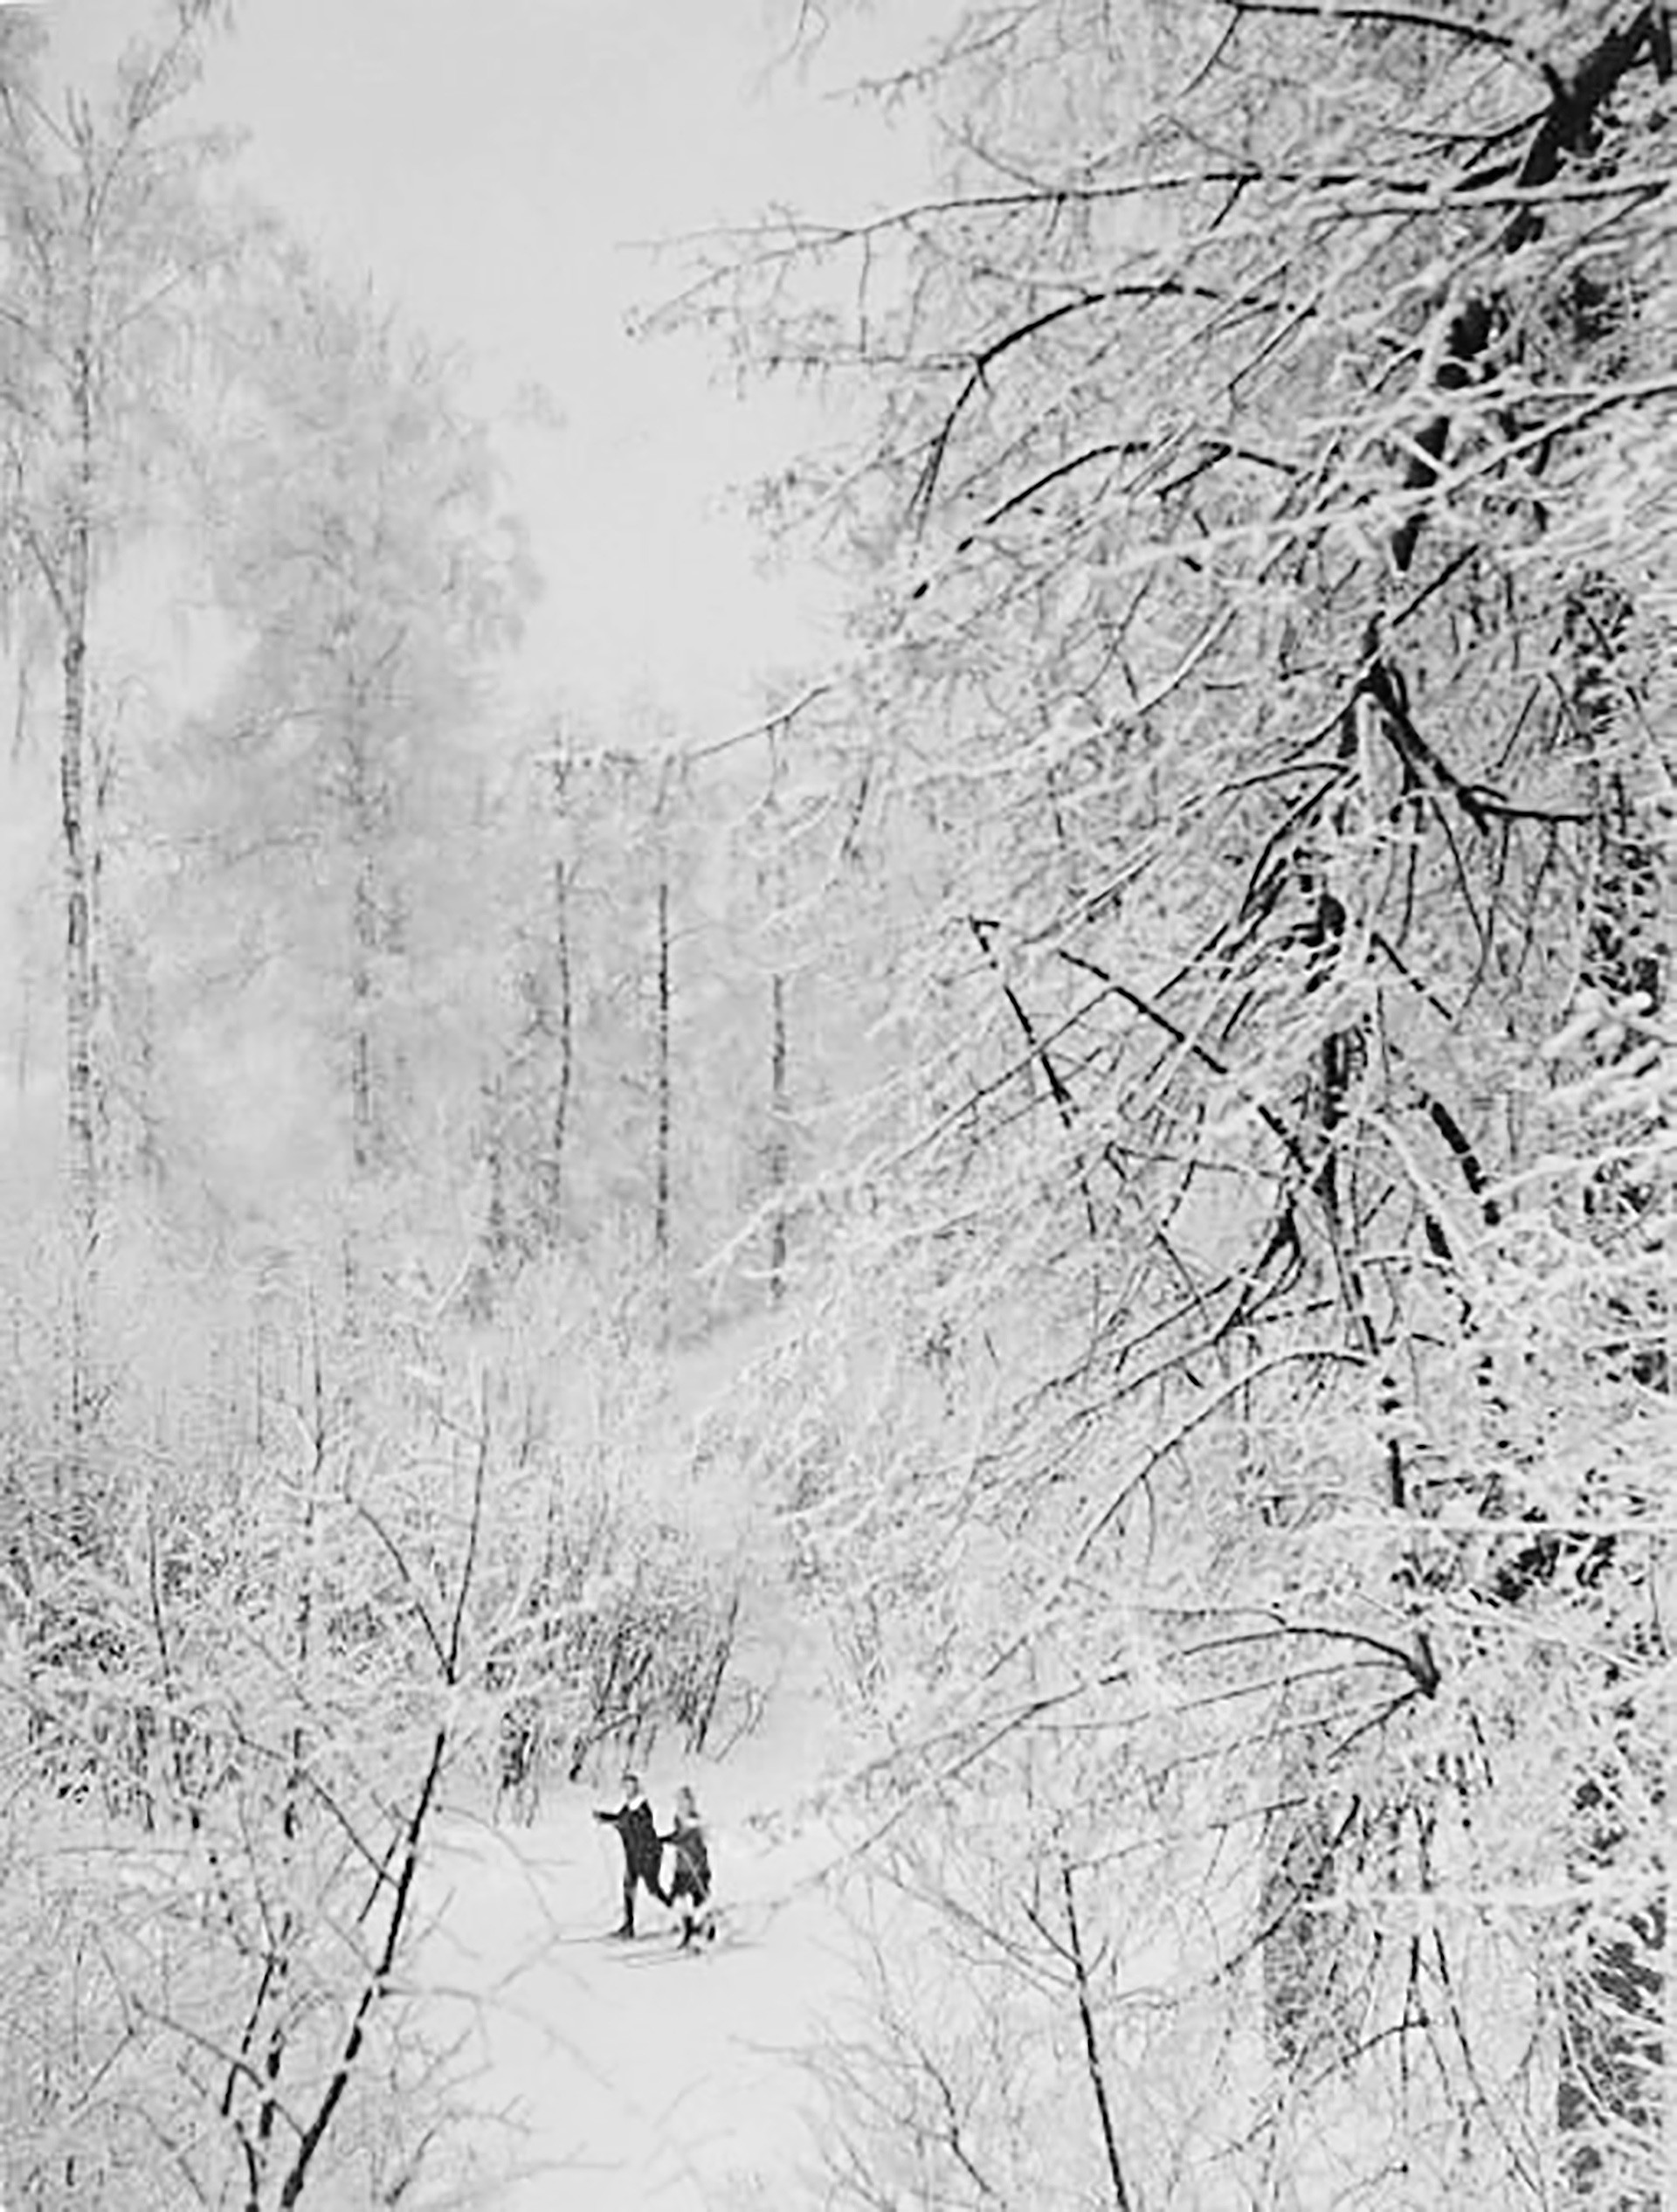 Skifahren ist seit jeher ein russischer Wintersportklassiker. Zu Sowjetzeiten gehörte Skilaufen sogar zum Schulsportprogramm.